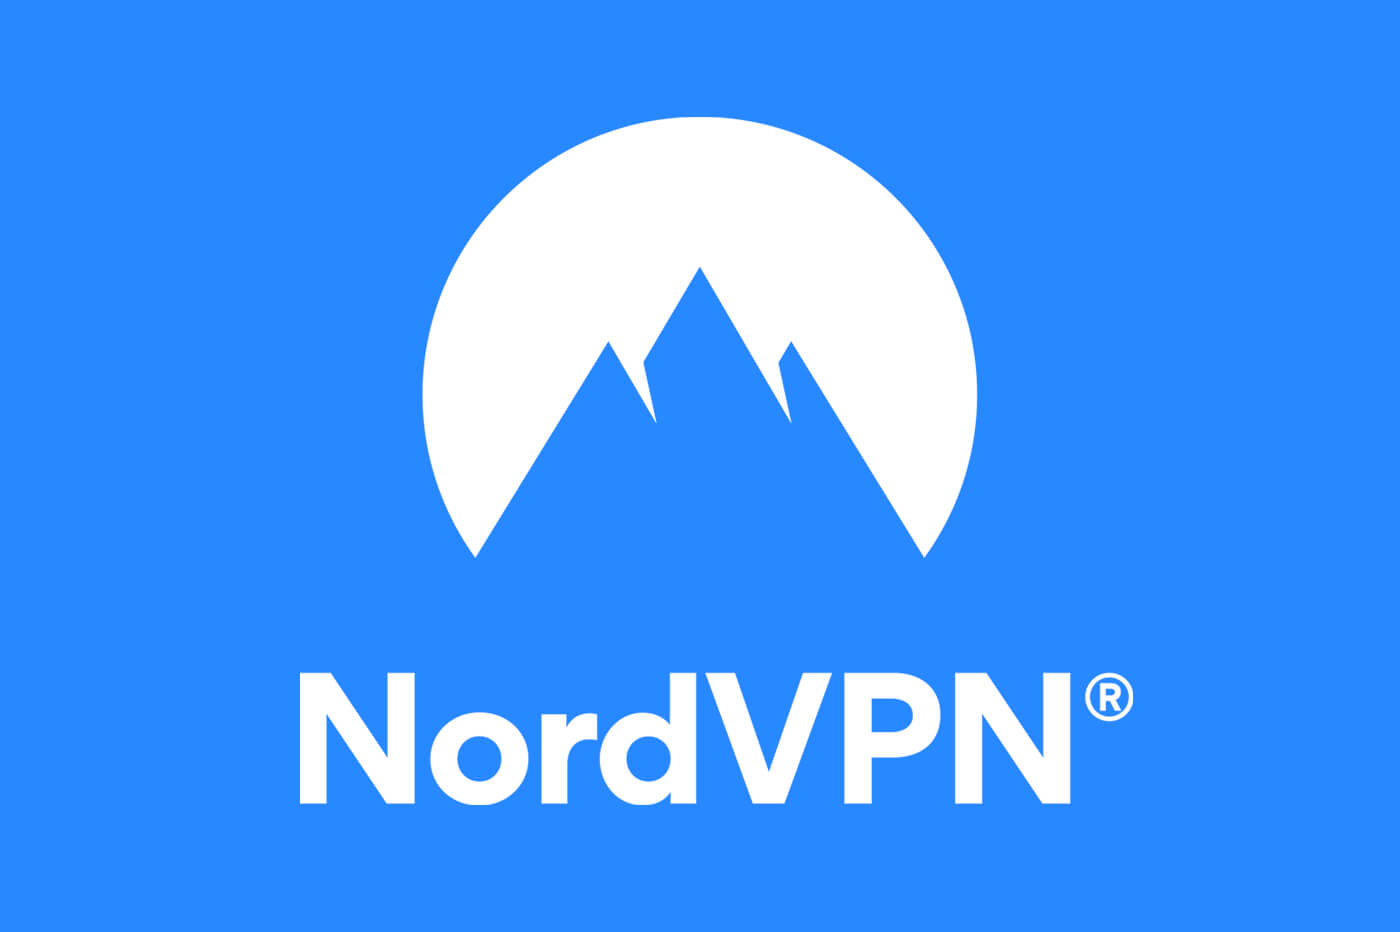 Nome e logotipo da empresa NordVPN, picos de montanhas azuis contra um círculo branco sobre um fundo azul.